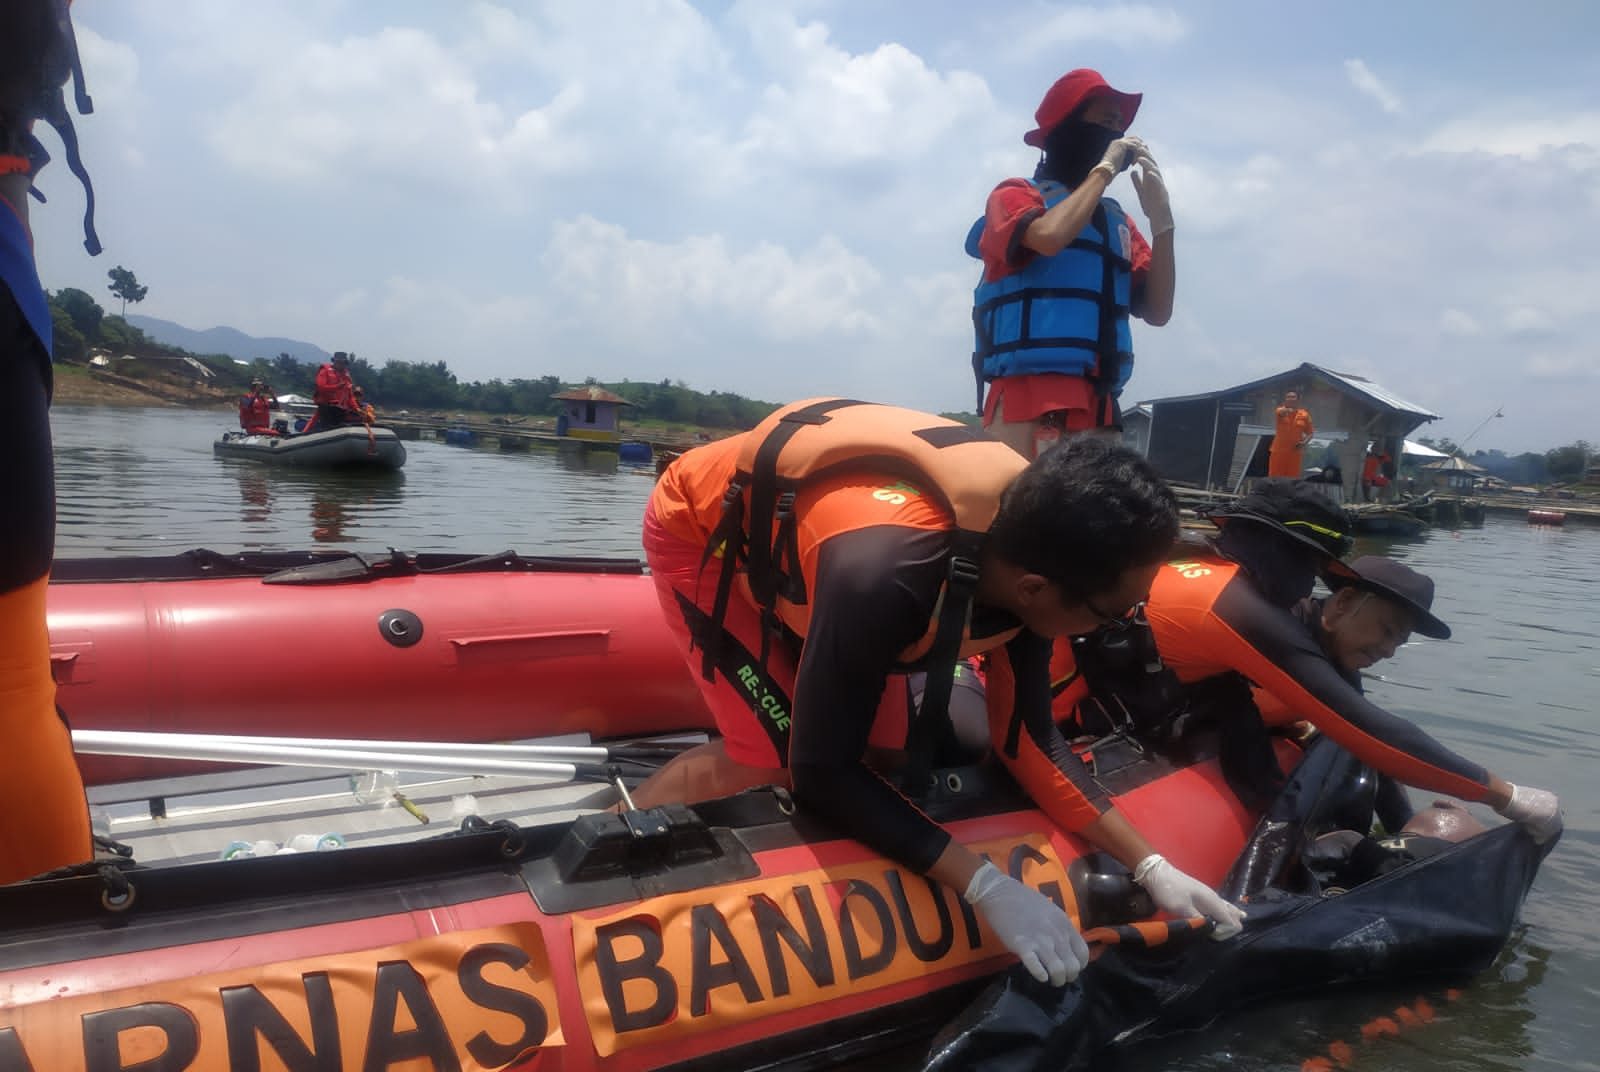 Tiga Hari Pencarian, Korban Tenggelam di Perairan Jangari Cianjur Ditemukan Meninggal Dunia